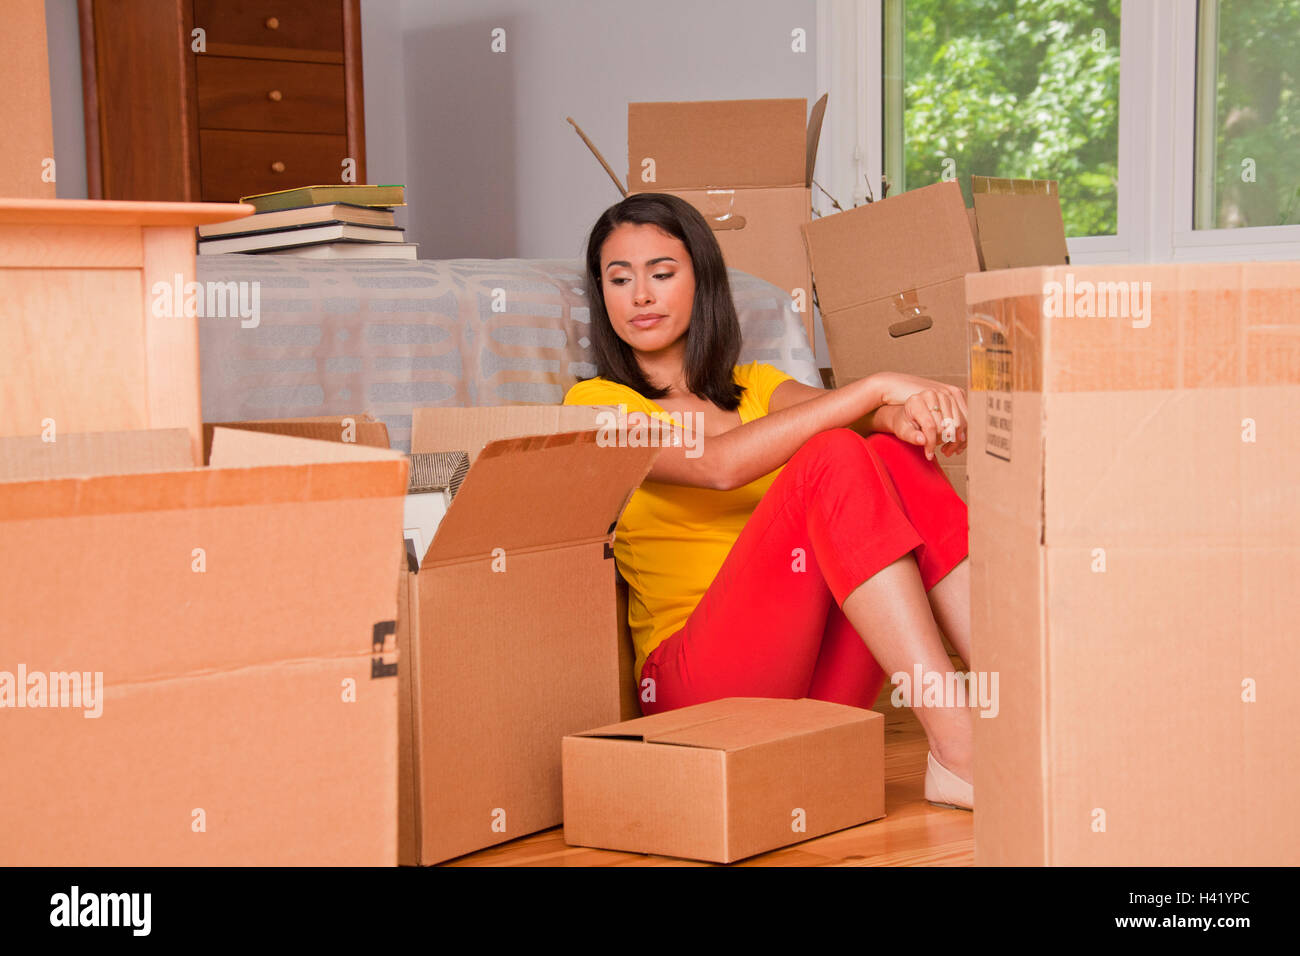 Ispanico donna seduta sul pavimento con contenitori per il trasloco Foto Stock